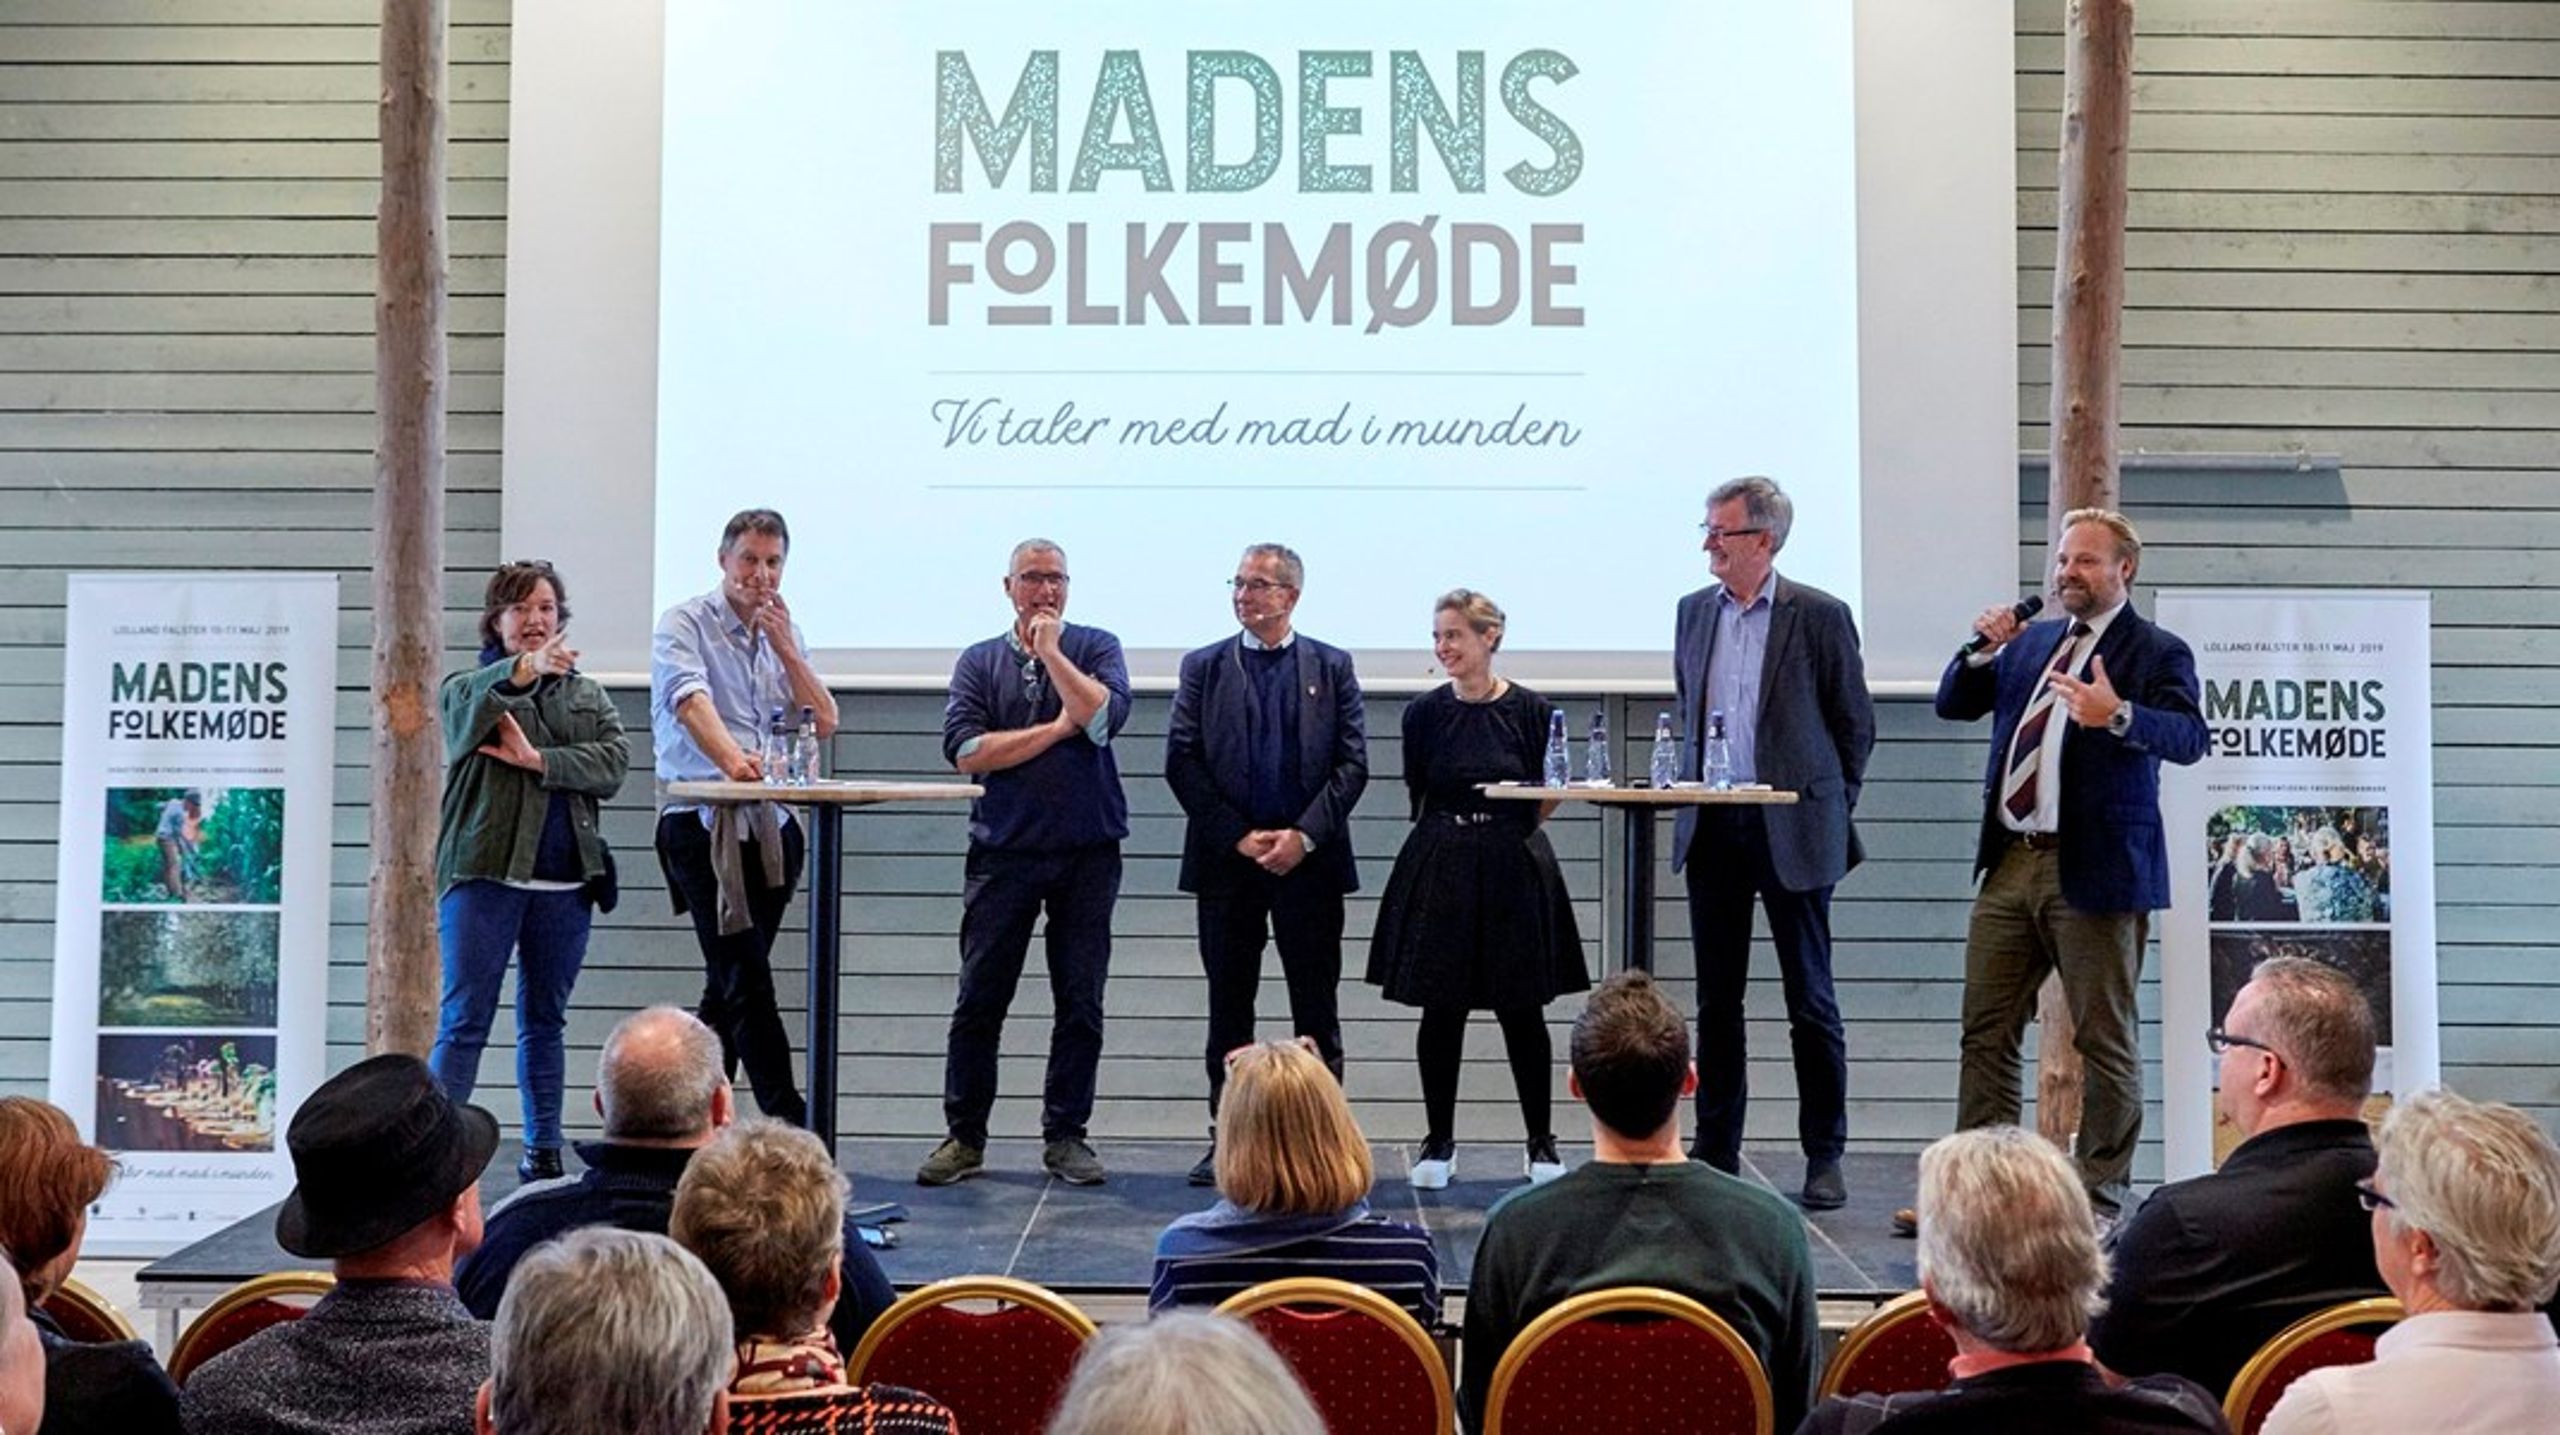 Her ses en paneldebat fra Madens Folkemøde i 2019, som blev afholdt på Lolland og Falster.